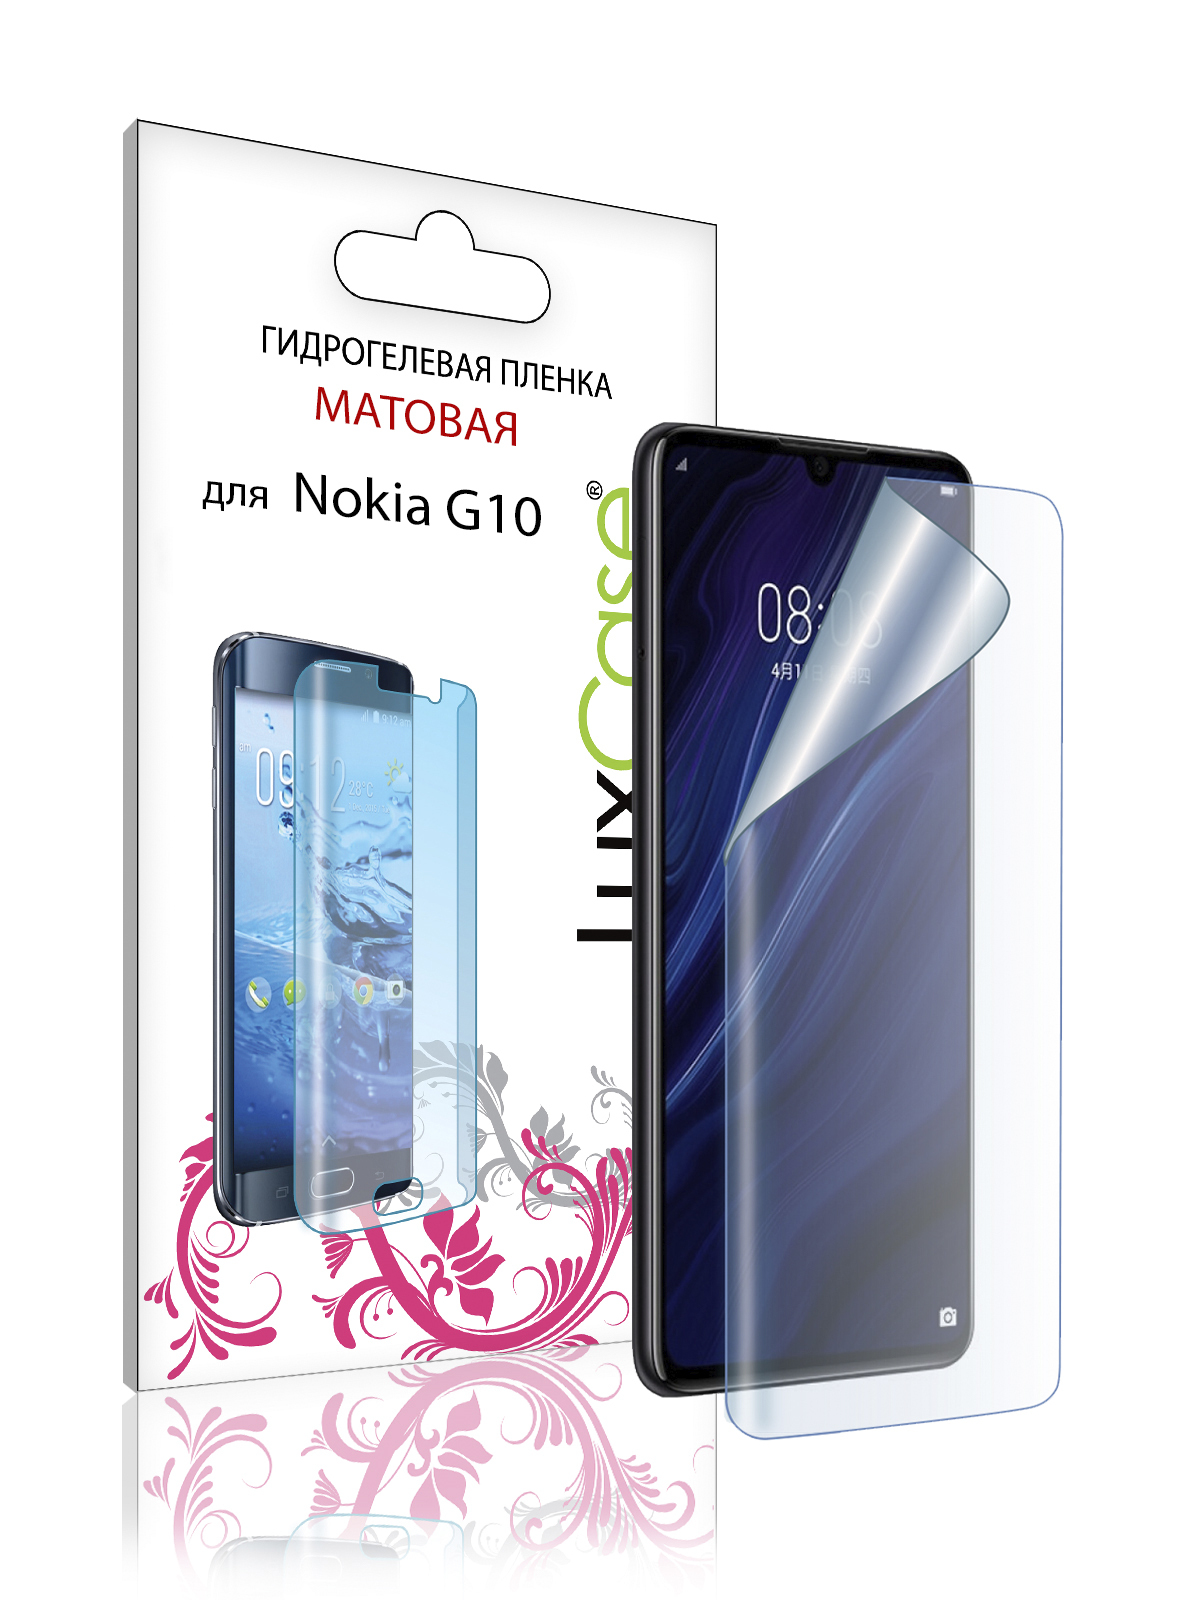 Пленка гидрогелевая LuxCase для Nokia G10 0.14mm Front Matte 86453 гидрогелевая пленка luxcase для nokia g10 0 14mm back matte 86454